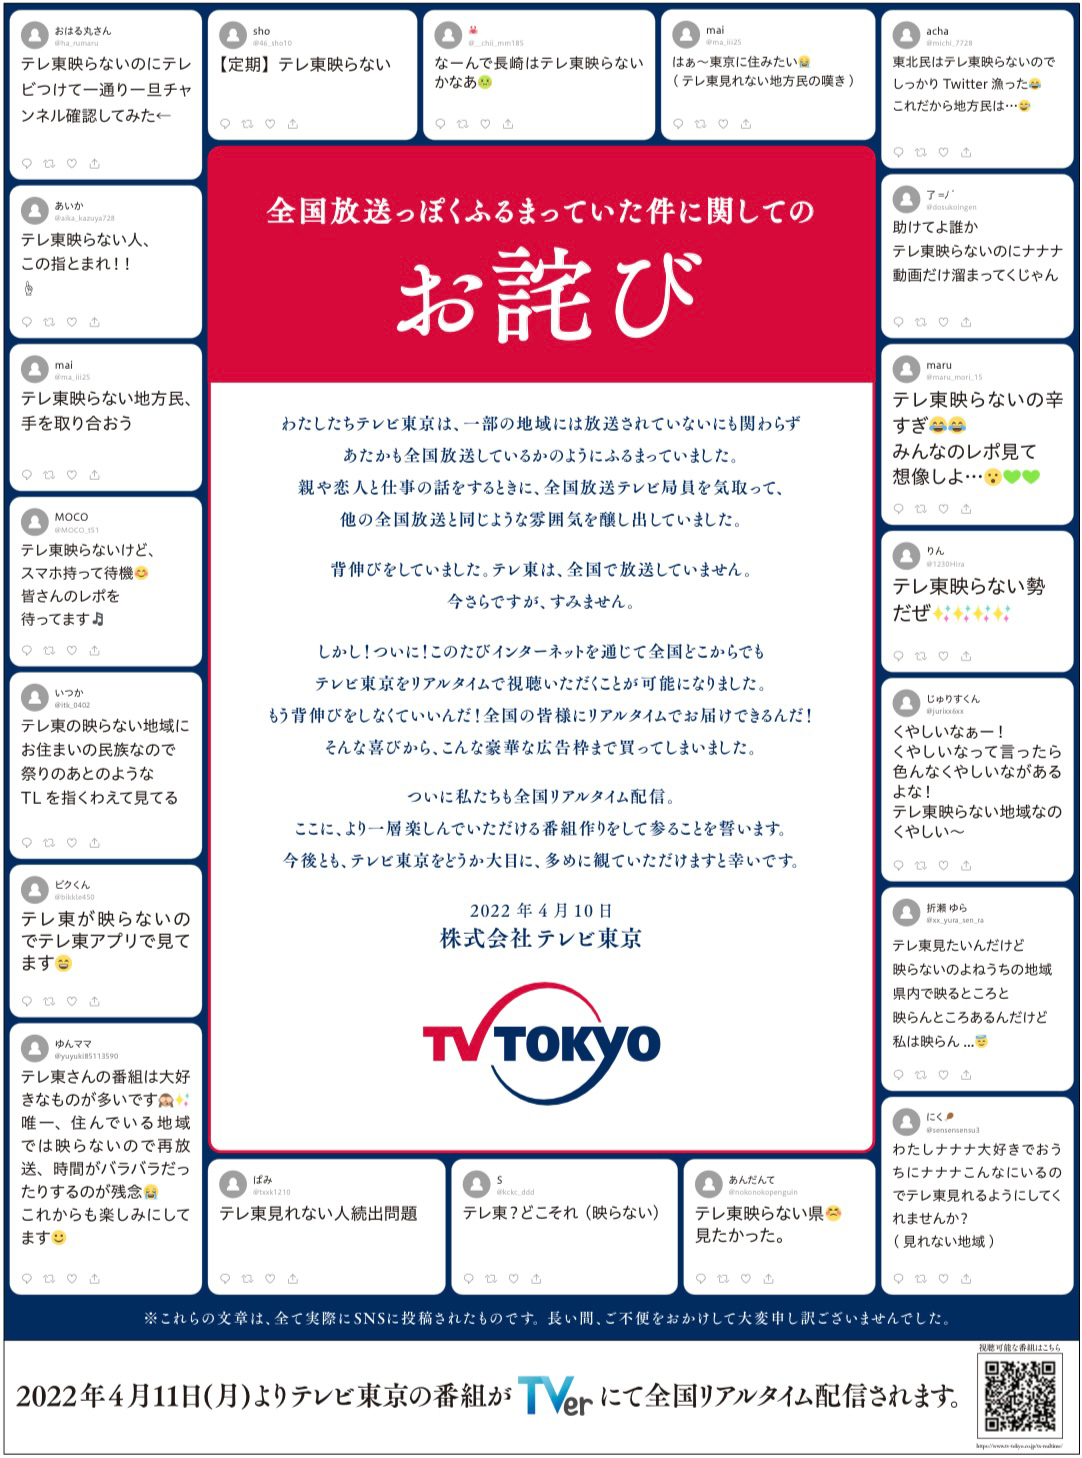 「全国放送っぽくふるまっていた」　テレビ東京が“お詫び広告” (ITmedia NEWS)